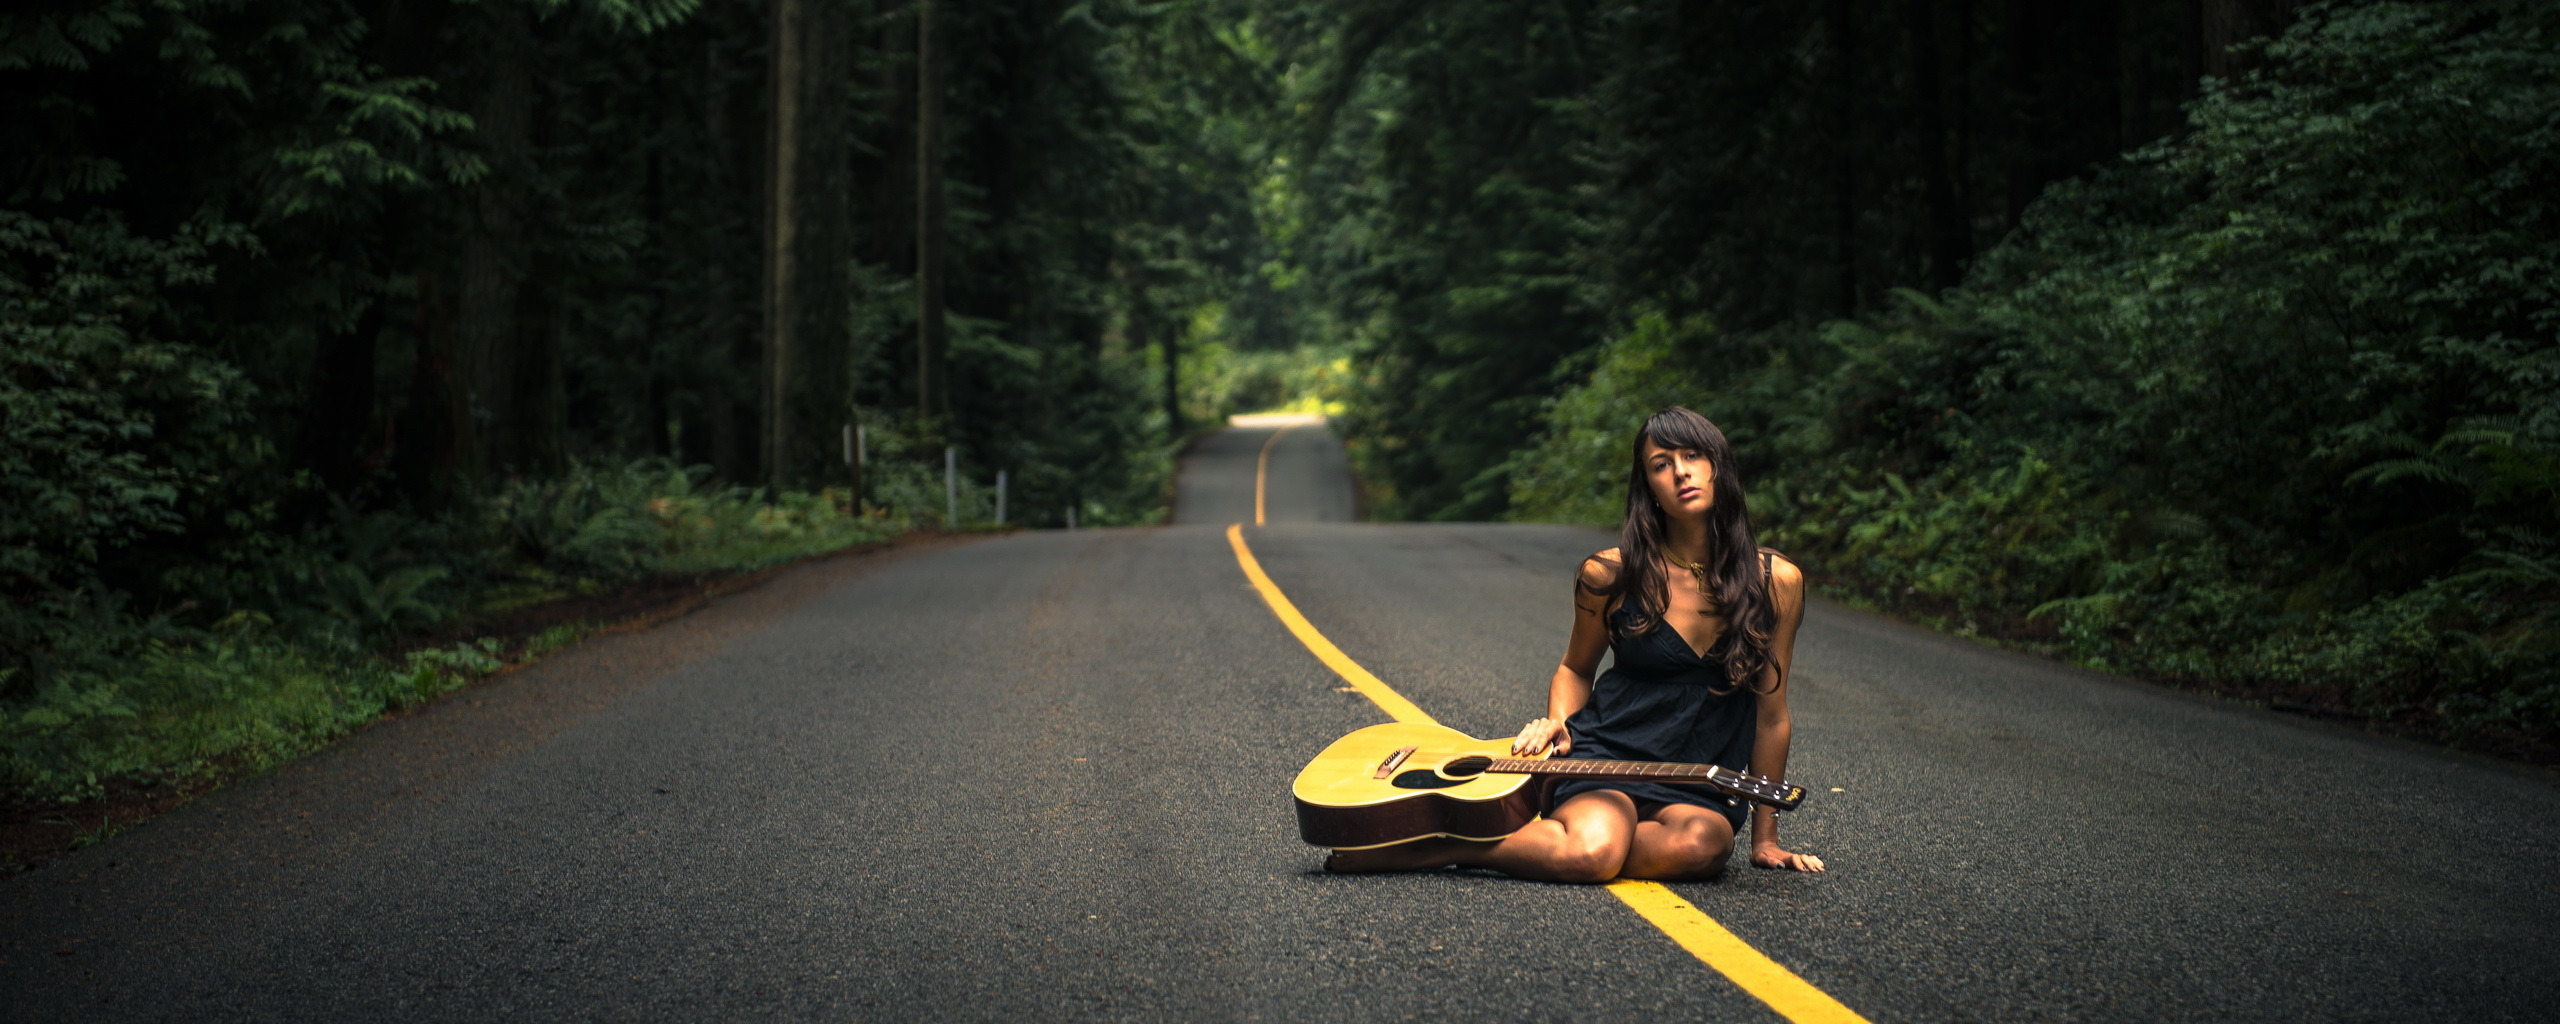 Четыре дороги песня. Девушка на дороге. Музыкальная дорога. Девушка с гитарой на дороге. Макет девушки на дороге.